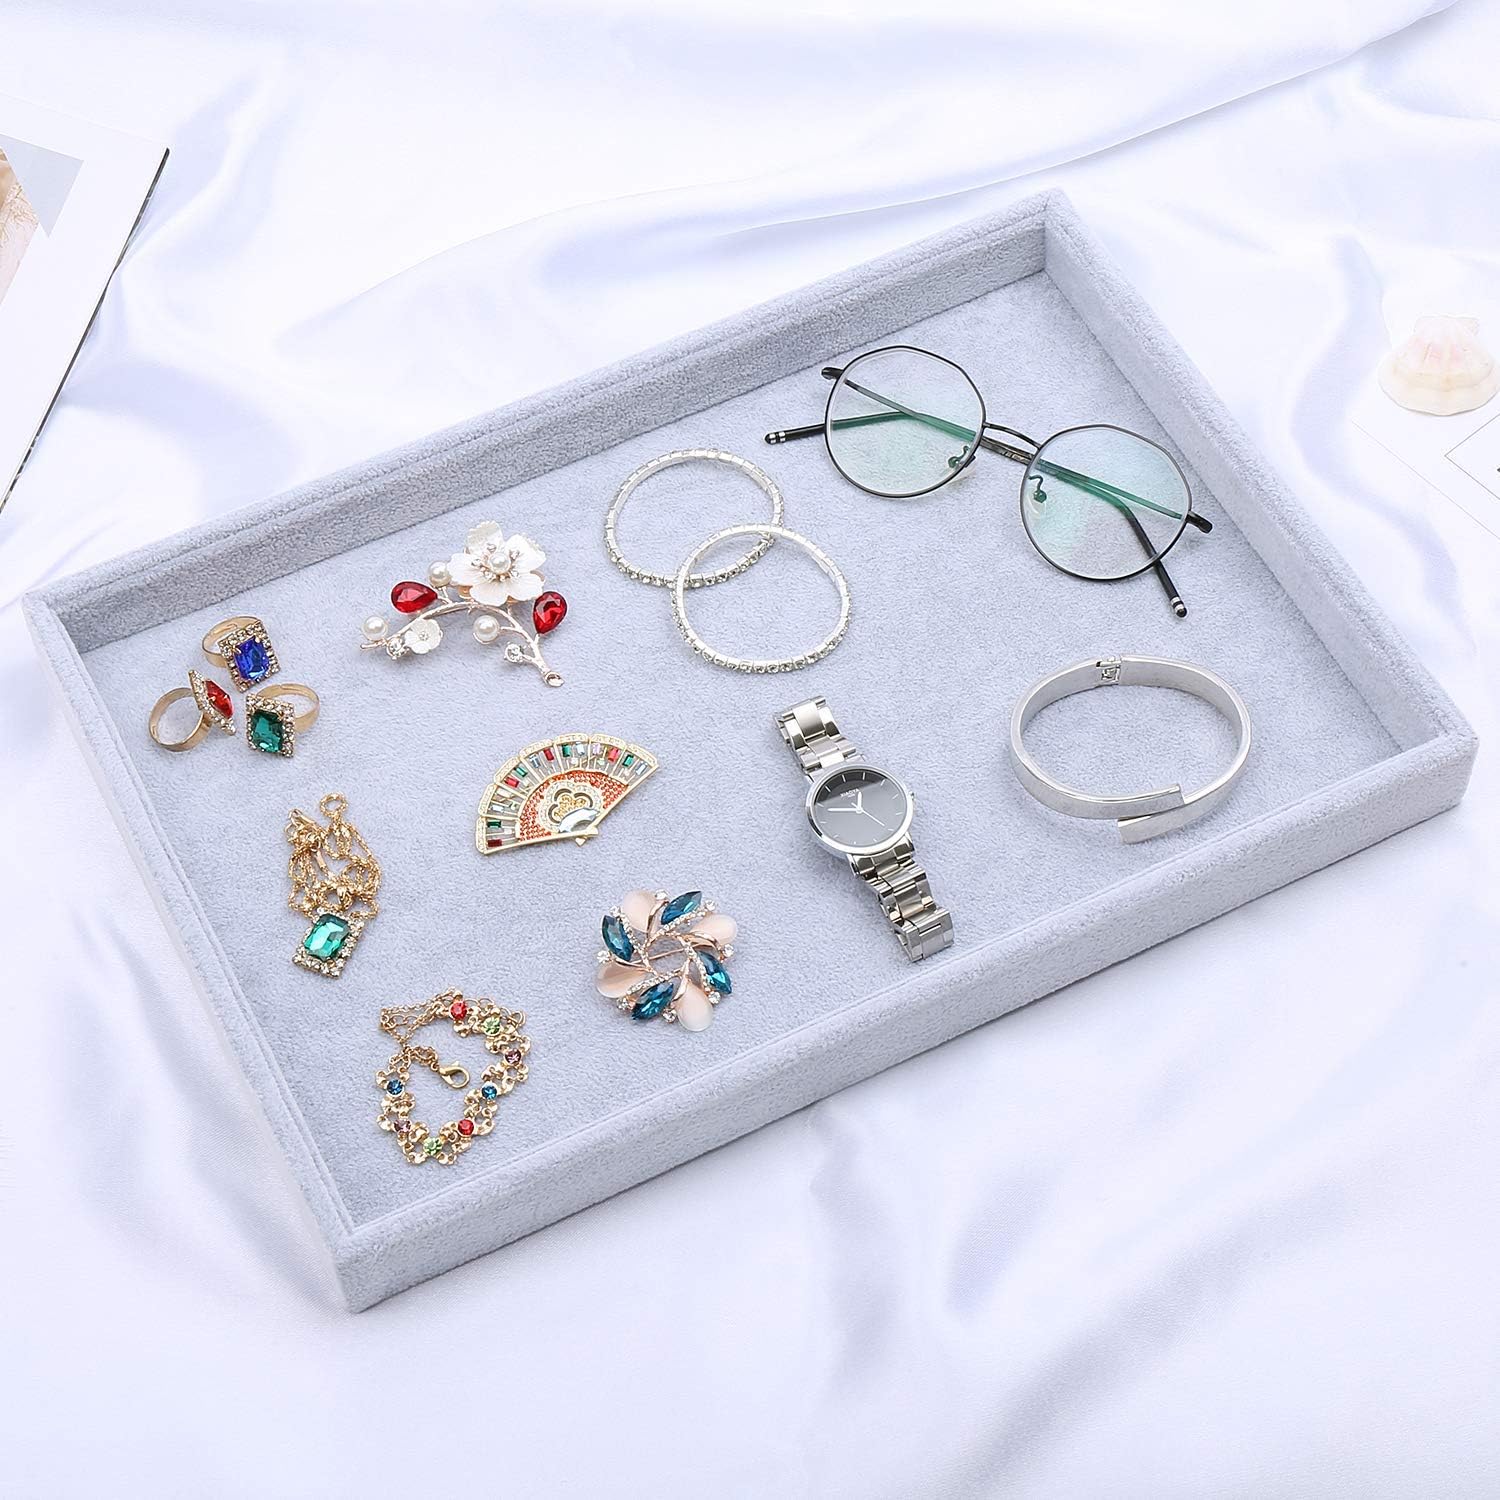 Velvet jewelry organizer box